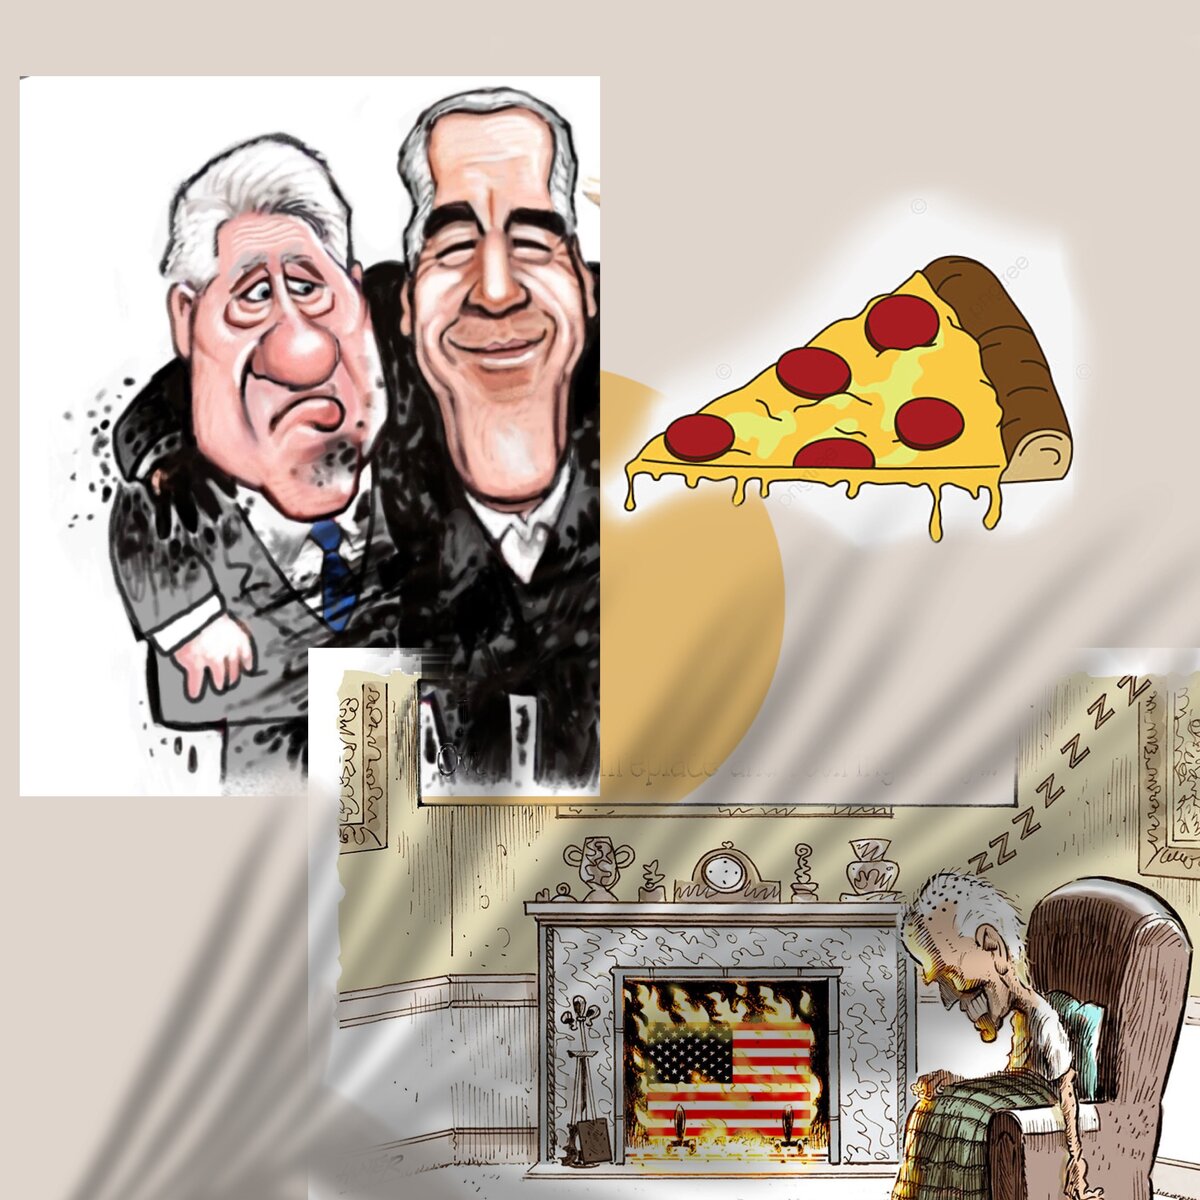 Ядовитая «пицца» Джеффри Эпштейна: Хантеру Байдену и Клинтонам приготовиться